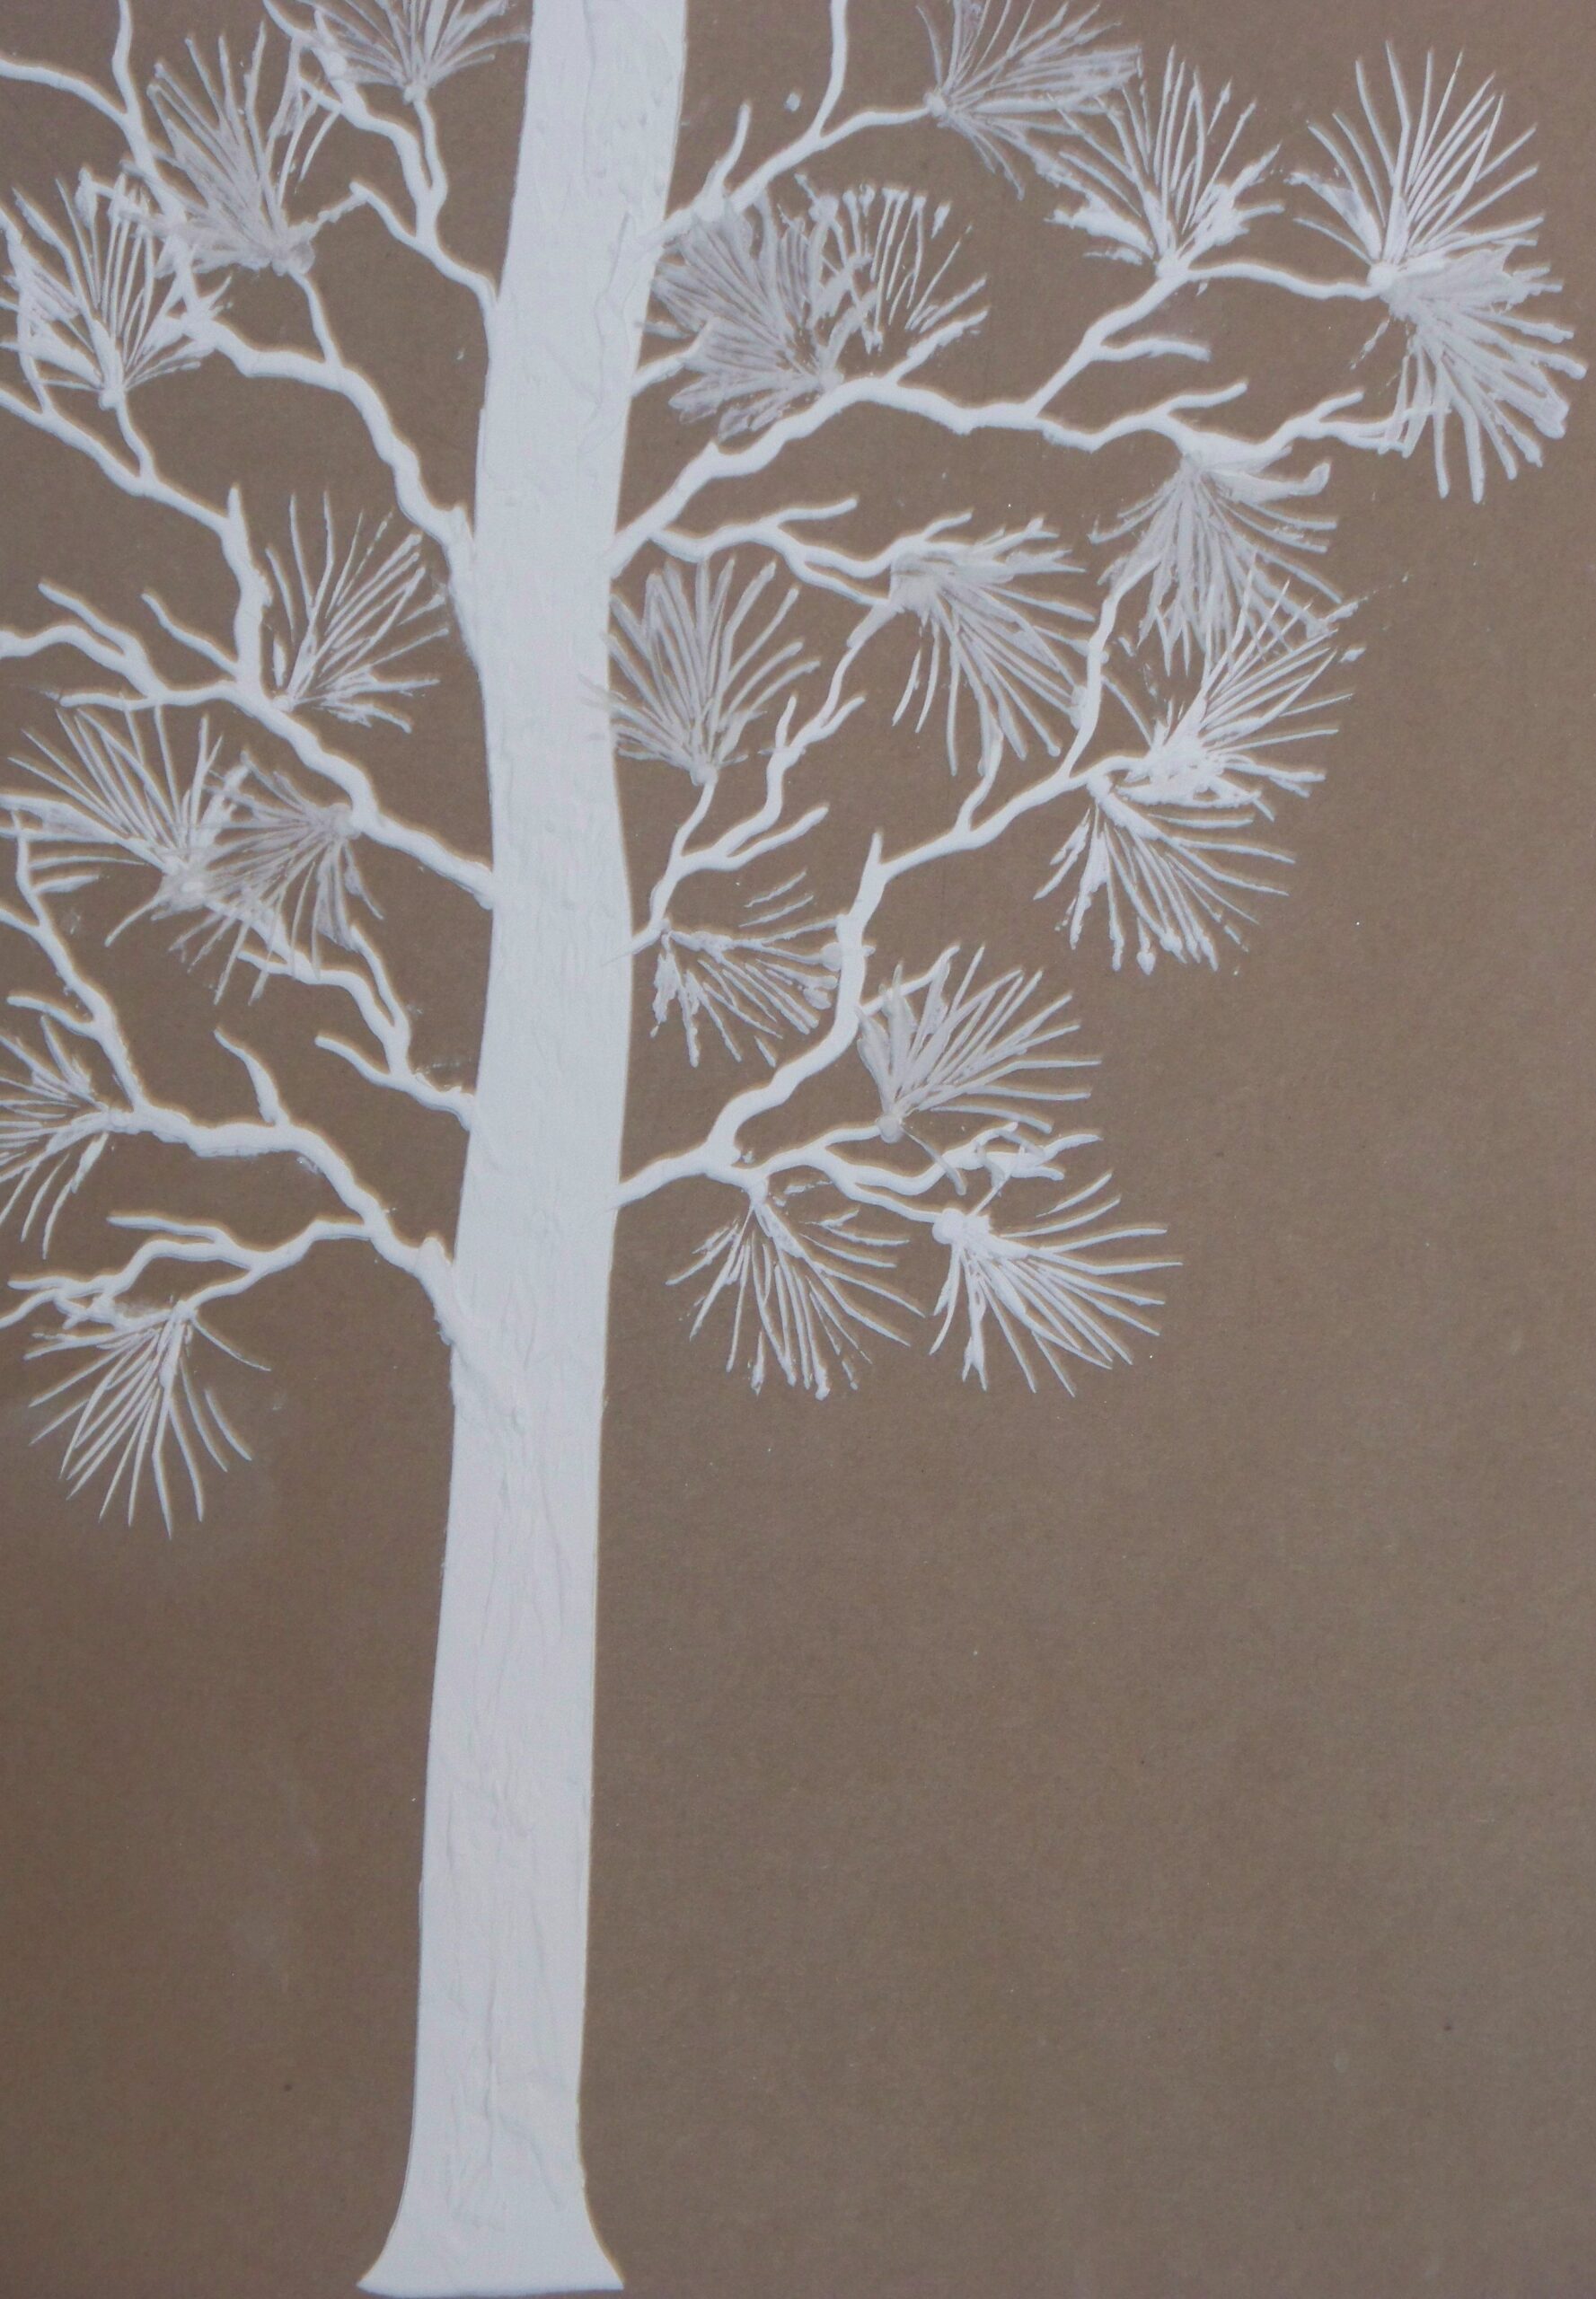 Plaster Stencil Life Sized Pine Tree - Walls Stencils, Plaster Stencils,  Painting Stencils